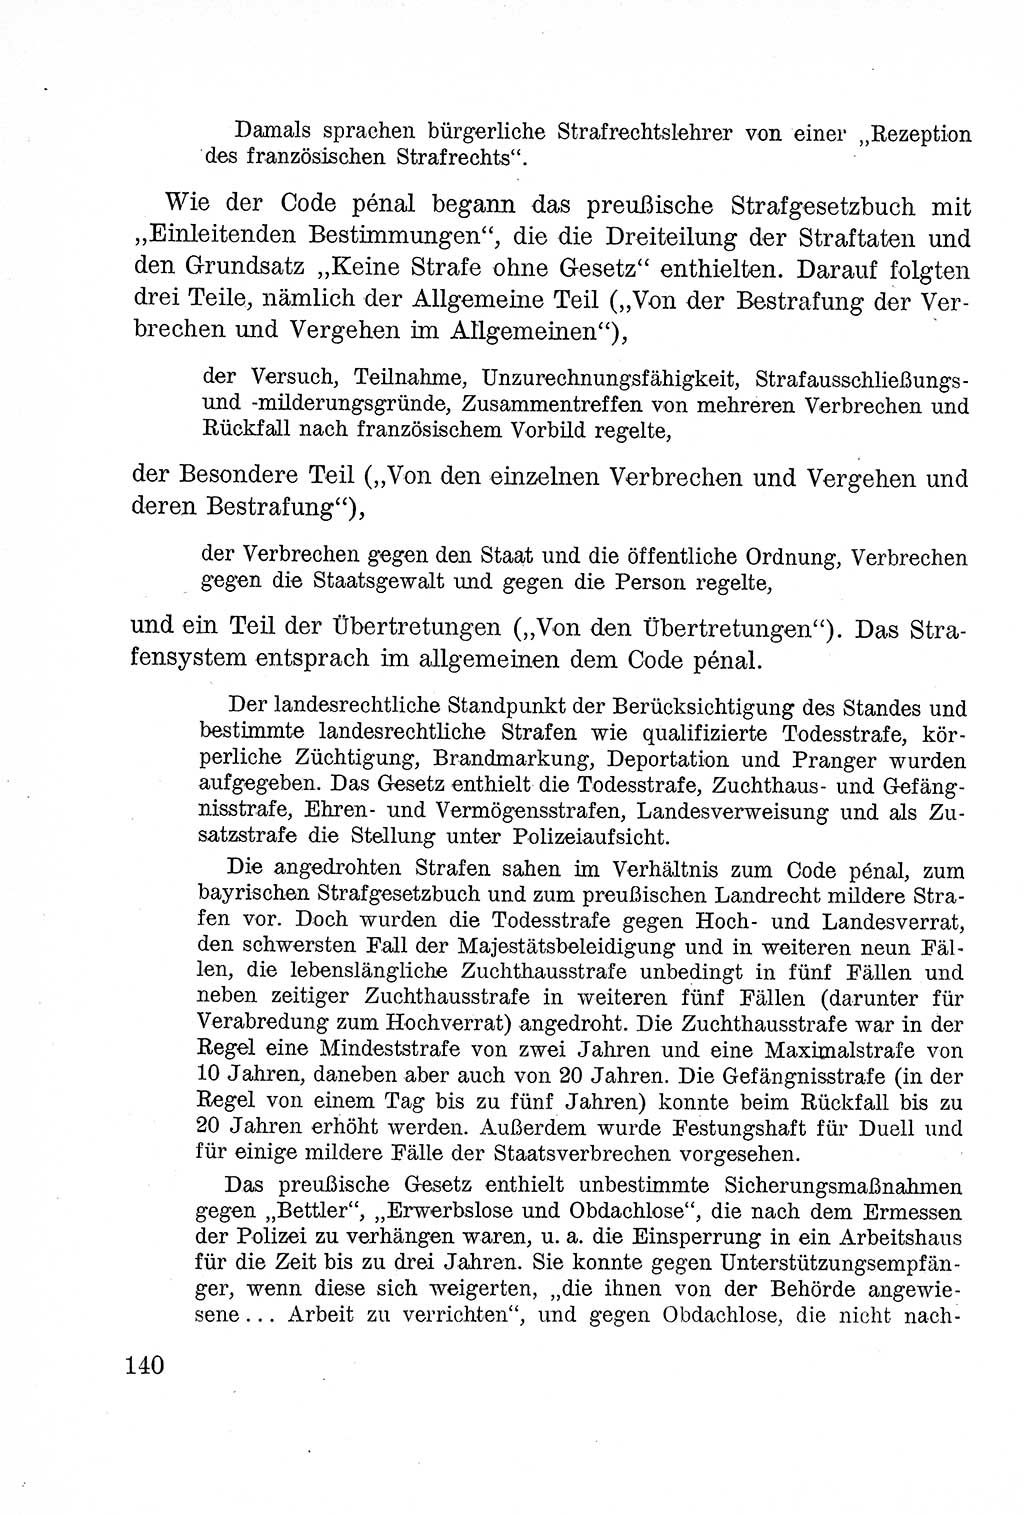 Lehrbuch des Strafrechts der Deutschen Demokratischen Republik (DDR), Allgemeiner Teil 1957, Seite 140 (Lb. Strafr. DDR AT 1957, S. 140)